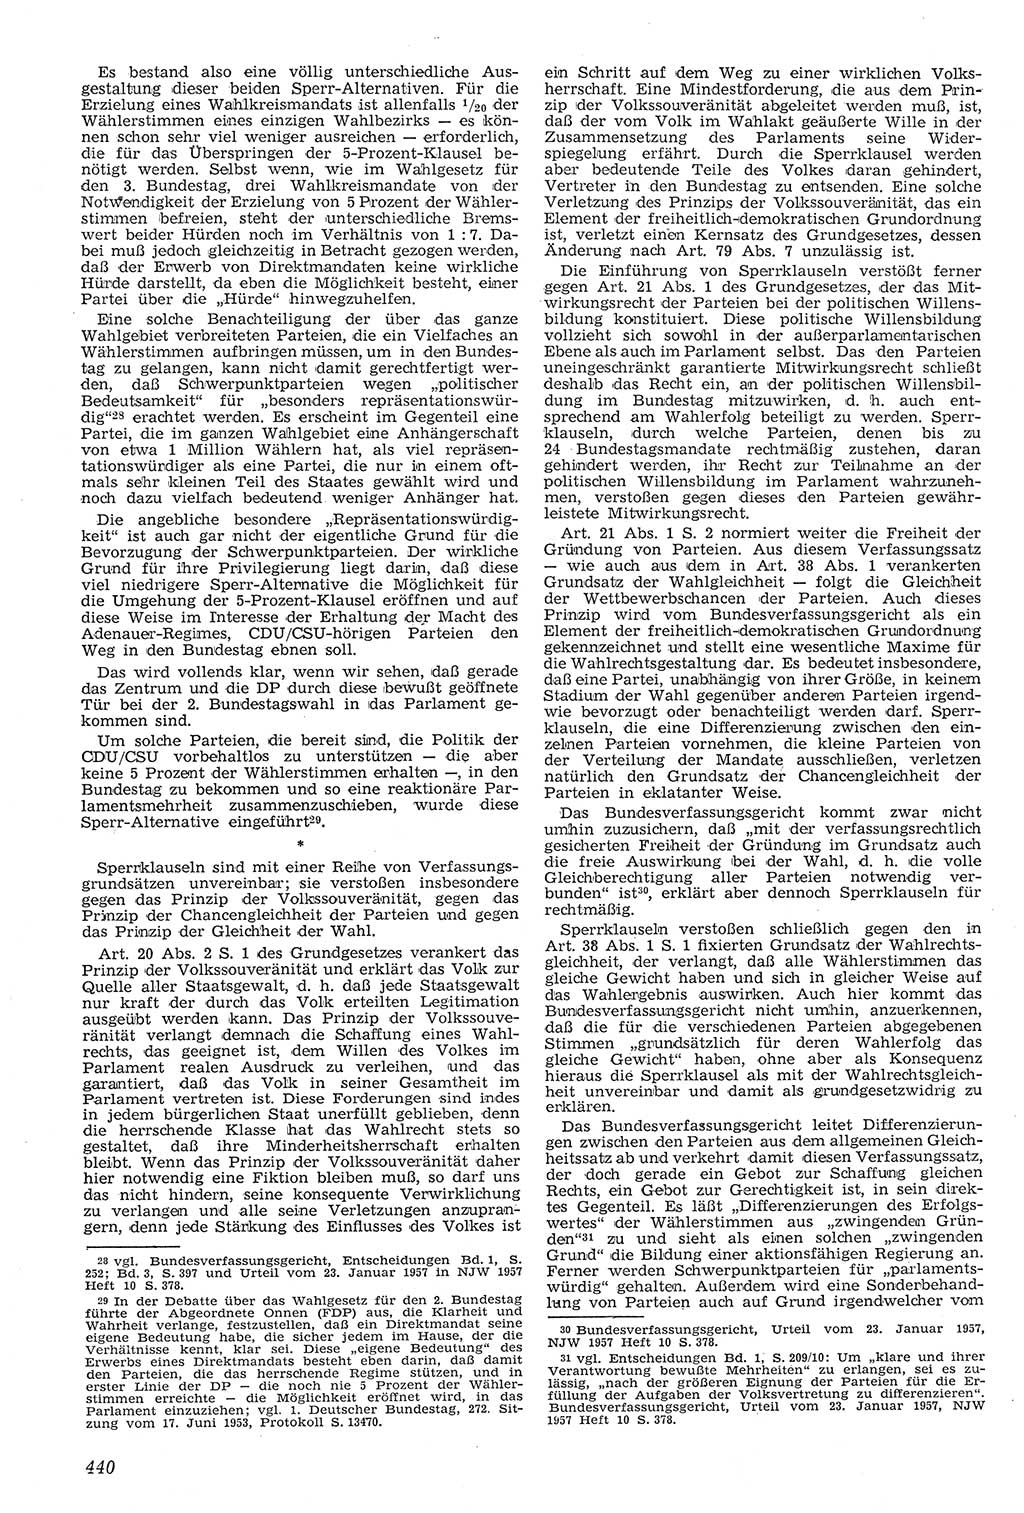 Neue Justiz (NJ), Zeitschrift für Recht und Rechtswissenschaft [Deutsche Demokratische Republik (DDR)], 11. Jahrgang 1957, Seite 440 (NJ DDR 1957, S. 440)